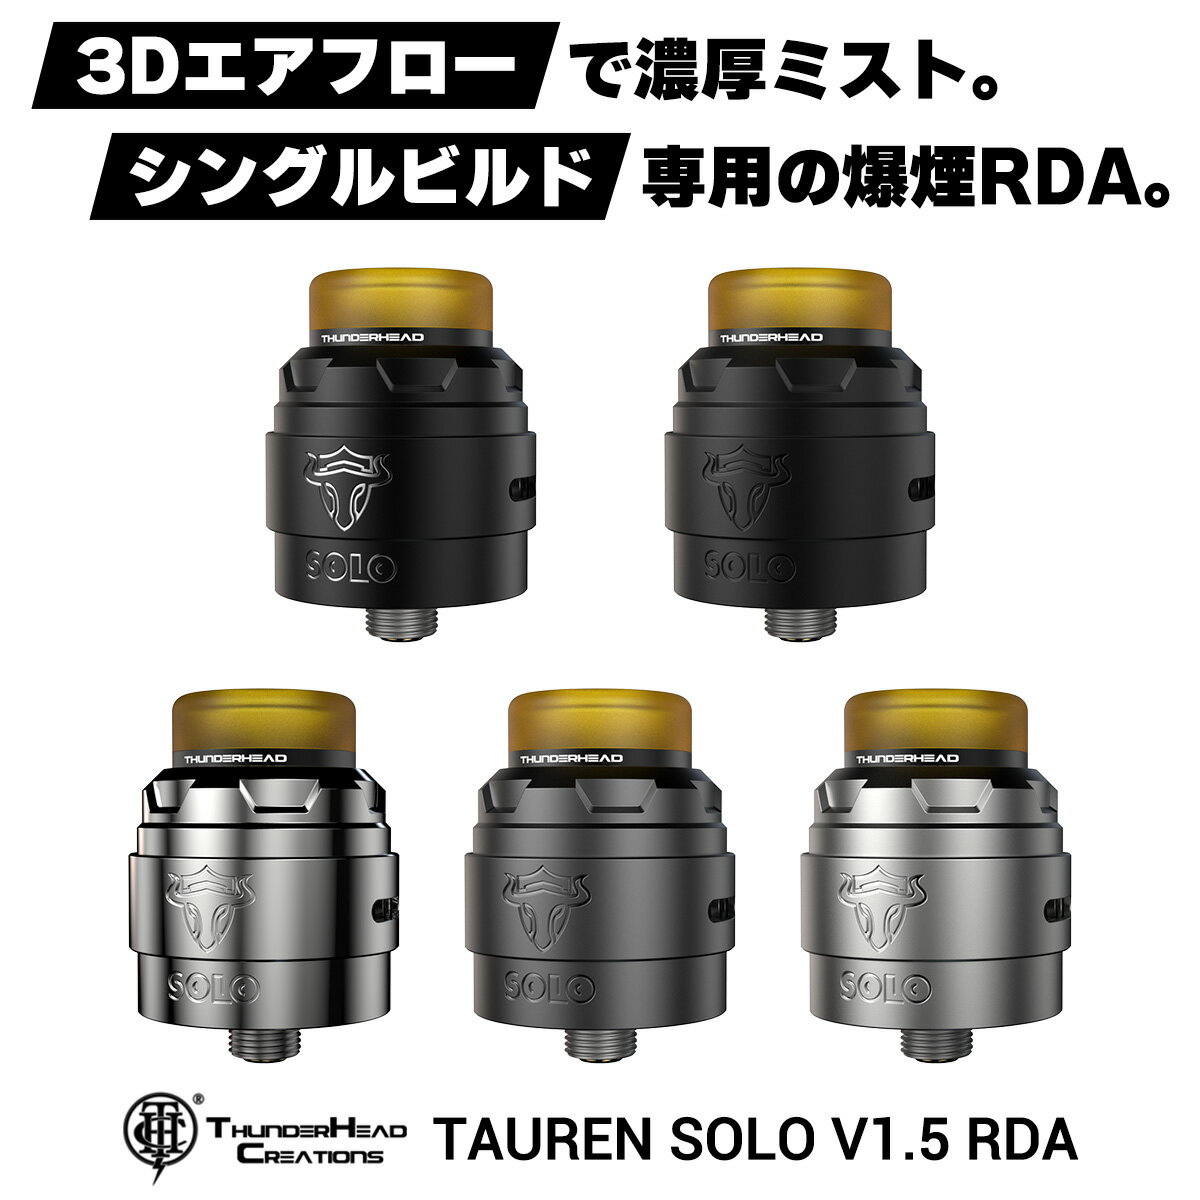 &#128310;THC (Thunder Head Creations)の大人気製品「Taurenシリーズ」に新作が登場！ その名も【Tauren Solo V1.5 RDA】(タウレンソロV1.5)！ &#128311;直径24mmのコンパクトなアトマイザー！ 爆煙特化型のシングルビルド専用RDA！ &#128310;ポストレスタイプのシングルビルドデッキを採用！ ビルドスペースが広く、爆煙コイルとの相性も抜群！ &#128311;シリーズおなじみの【3Dハニカムエアフロー】を搭載！ 31個のエアホールから放出された空気がコイルを立体的に直撃！ 誰がどう見ても味が出るデッキ構造です！ &#128310;付属のBFピンを使用する事で、ボトムフィルに対応！ スコンカーMODと組み合わせてお手軽にリキッドチャージが可能！ 型番 Tauren Solo V1.5 RDA サイズ 30mm×φ24mm 本体素材 ステンレス ドリップチップ 810規格 デッキ ポストレス/シングル エアフロー 3Dハニカムエアフロー 接続 510スレッド(BF対応) 内容品 ●THC Tauren Solo V1.5 RDA：1点 ●六角レンチ：2点 ●スペアパーツセット：1点 ●ユーザーマニュアル(英語)：1点 ご注意点 ●本製品を使用するためには別途ビルド用の材料や工具が必要になります。 お持ちでない場合はこちらからお求めくださいませ。 ==RBA用材料はこちら== ==VAPE専用工具などはこちら== ※ご不明点などございましたらお気軽にお問い合わせください